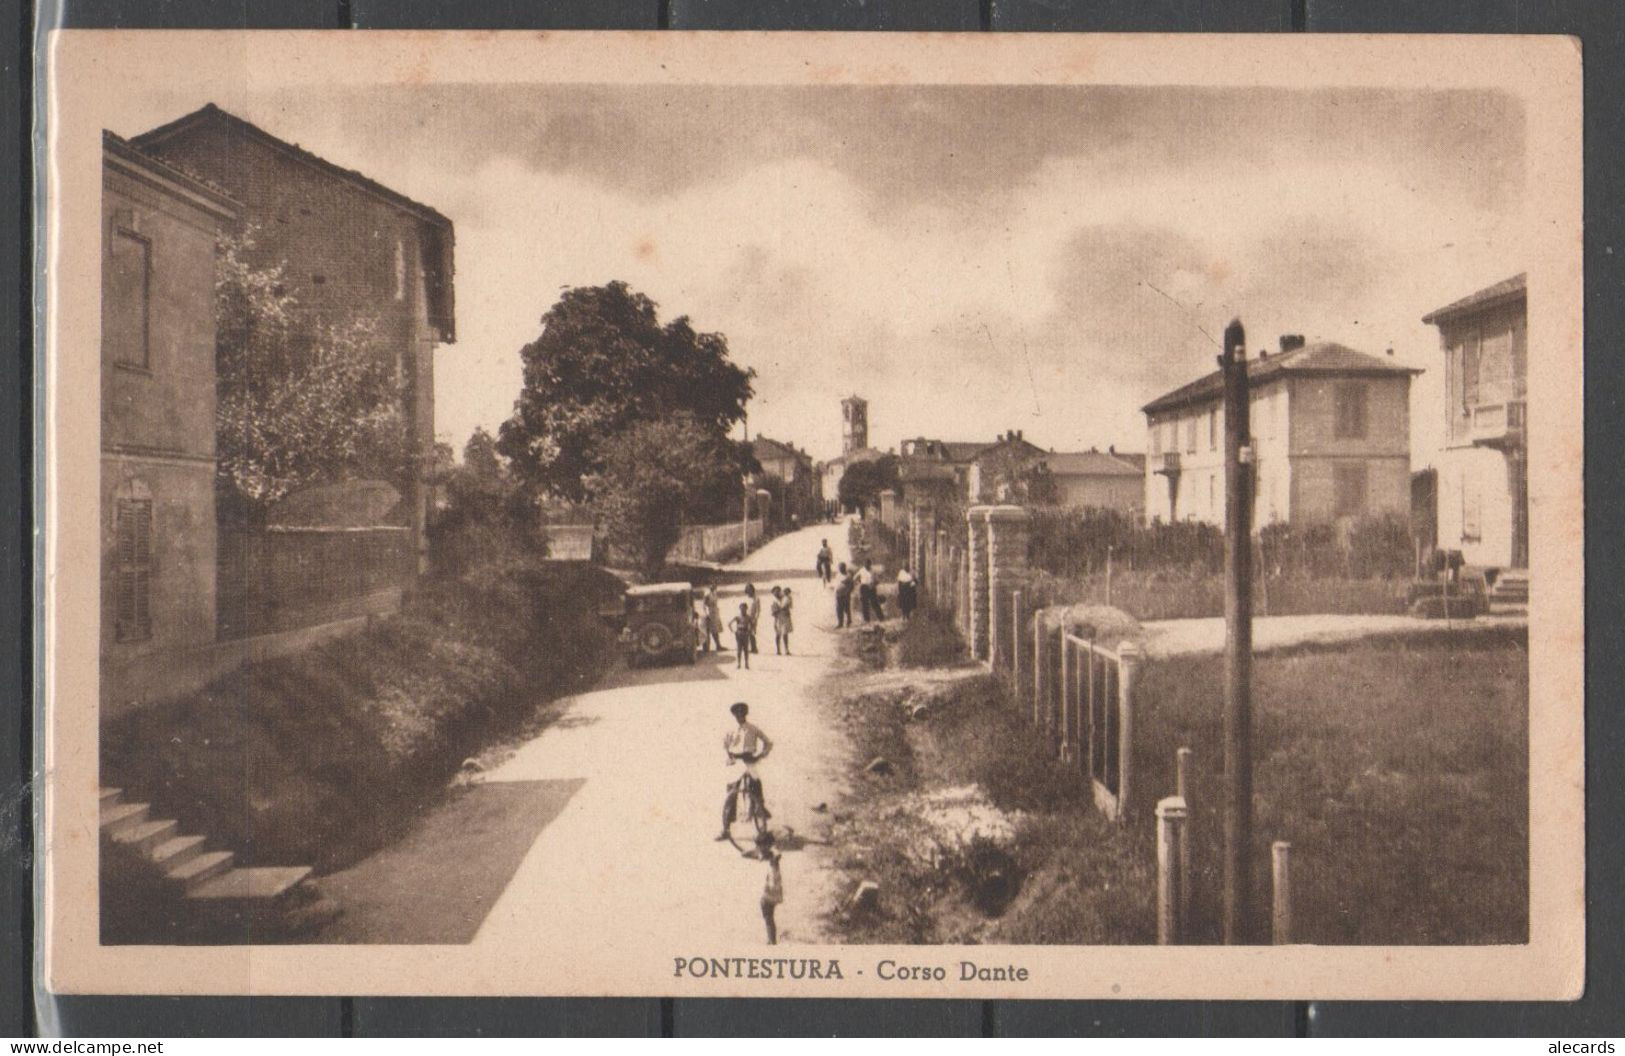 Pontestura - Corso Dante - Alessandria